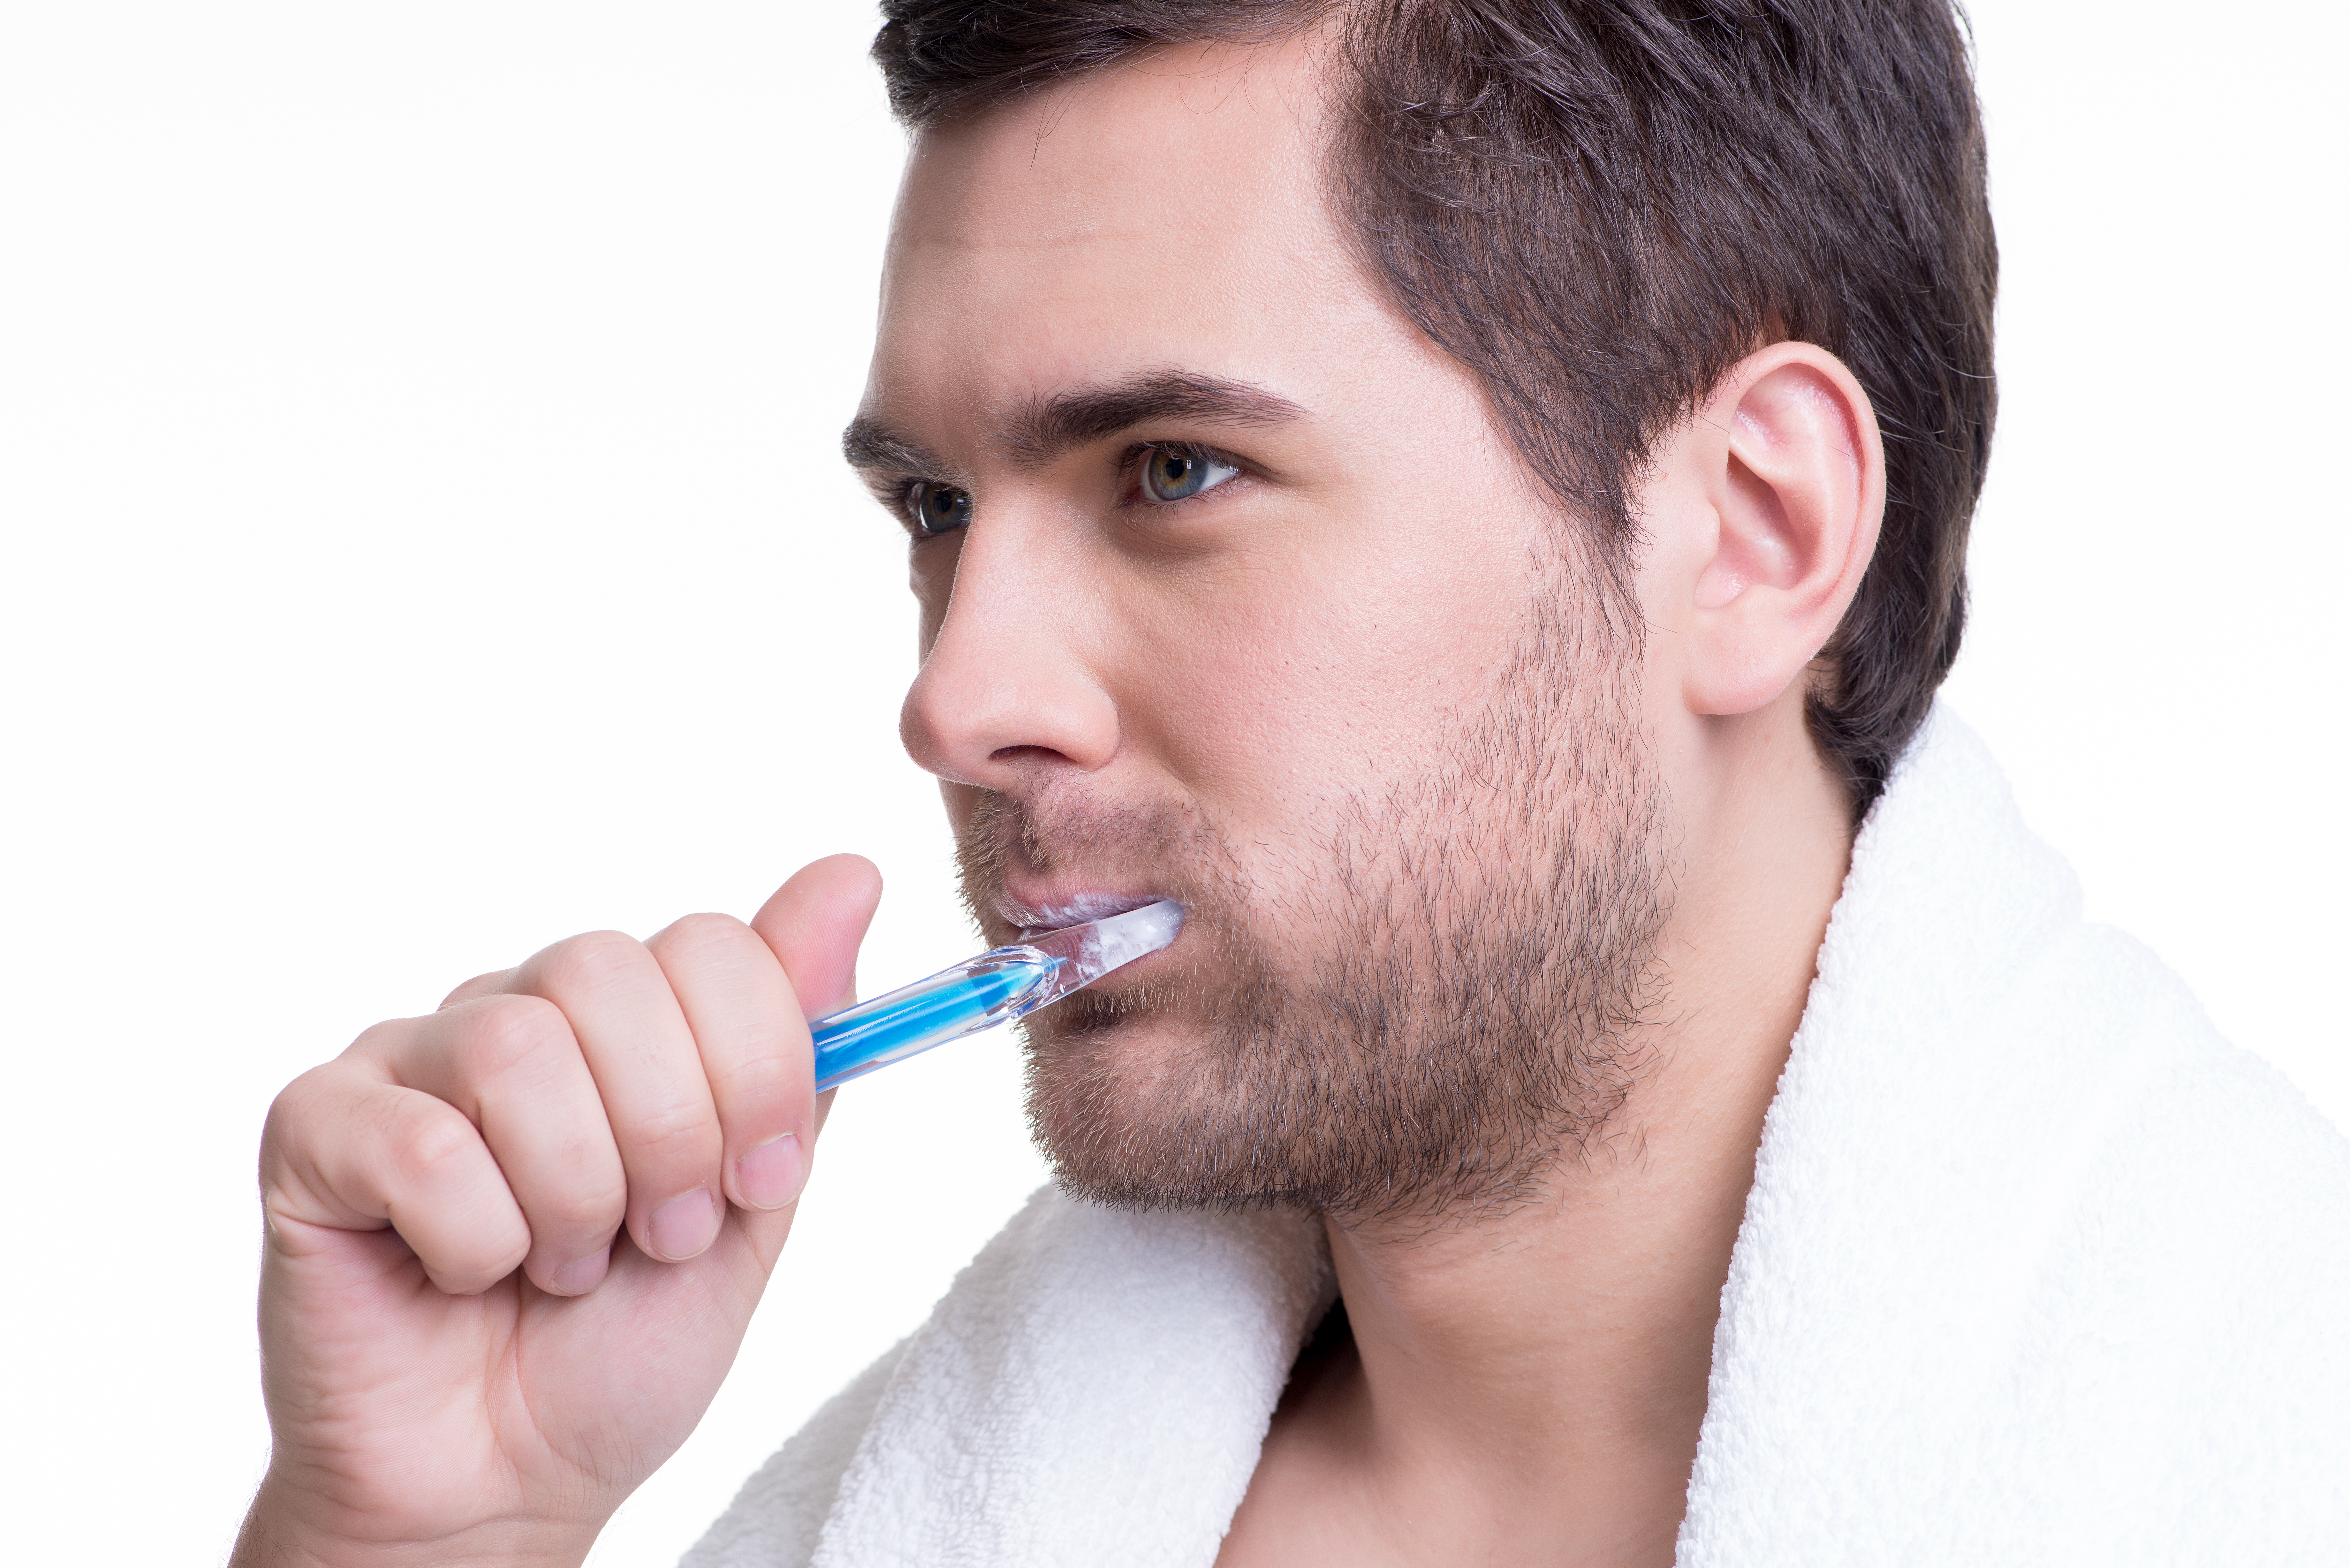 若要口腔健康，不能完全依赖牙膏， 适合自己的牙刷和正确的刷牙方式也扮演重要角色。-图取自freepik-